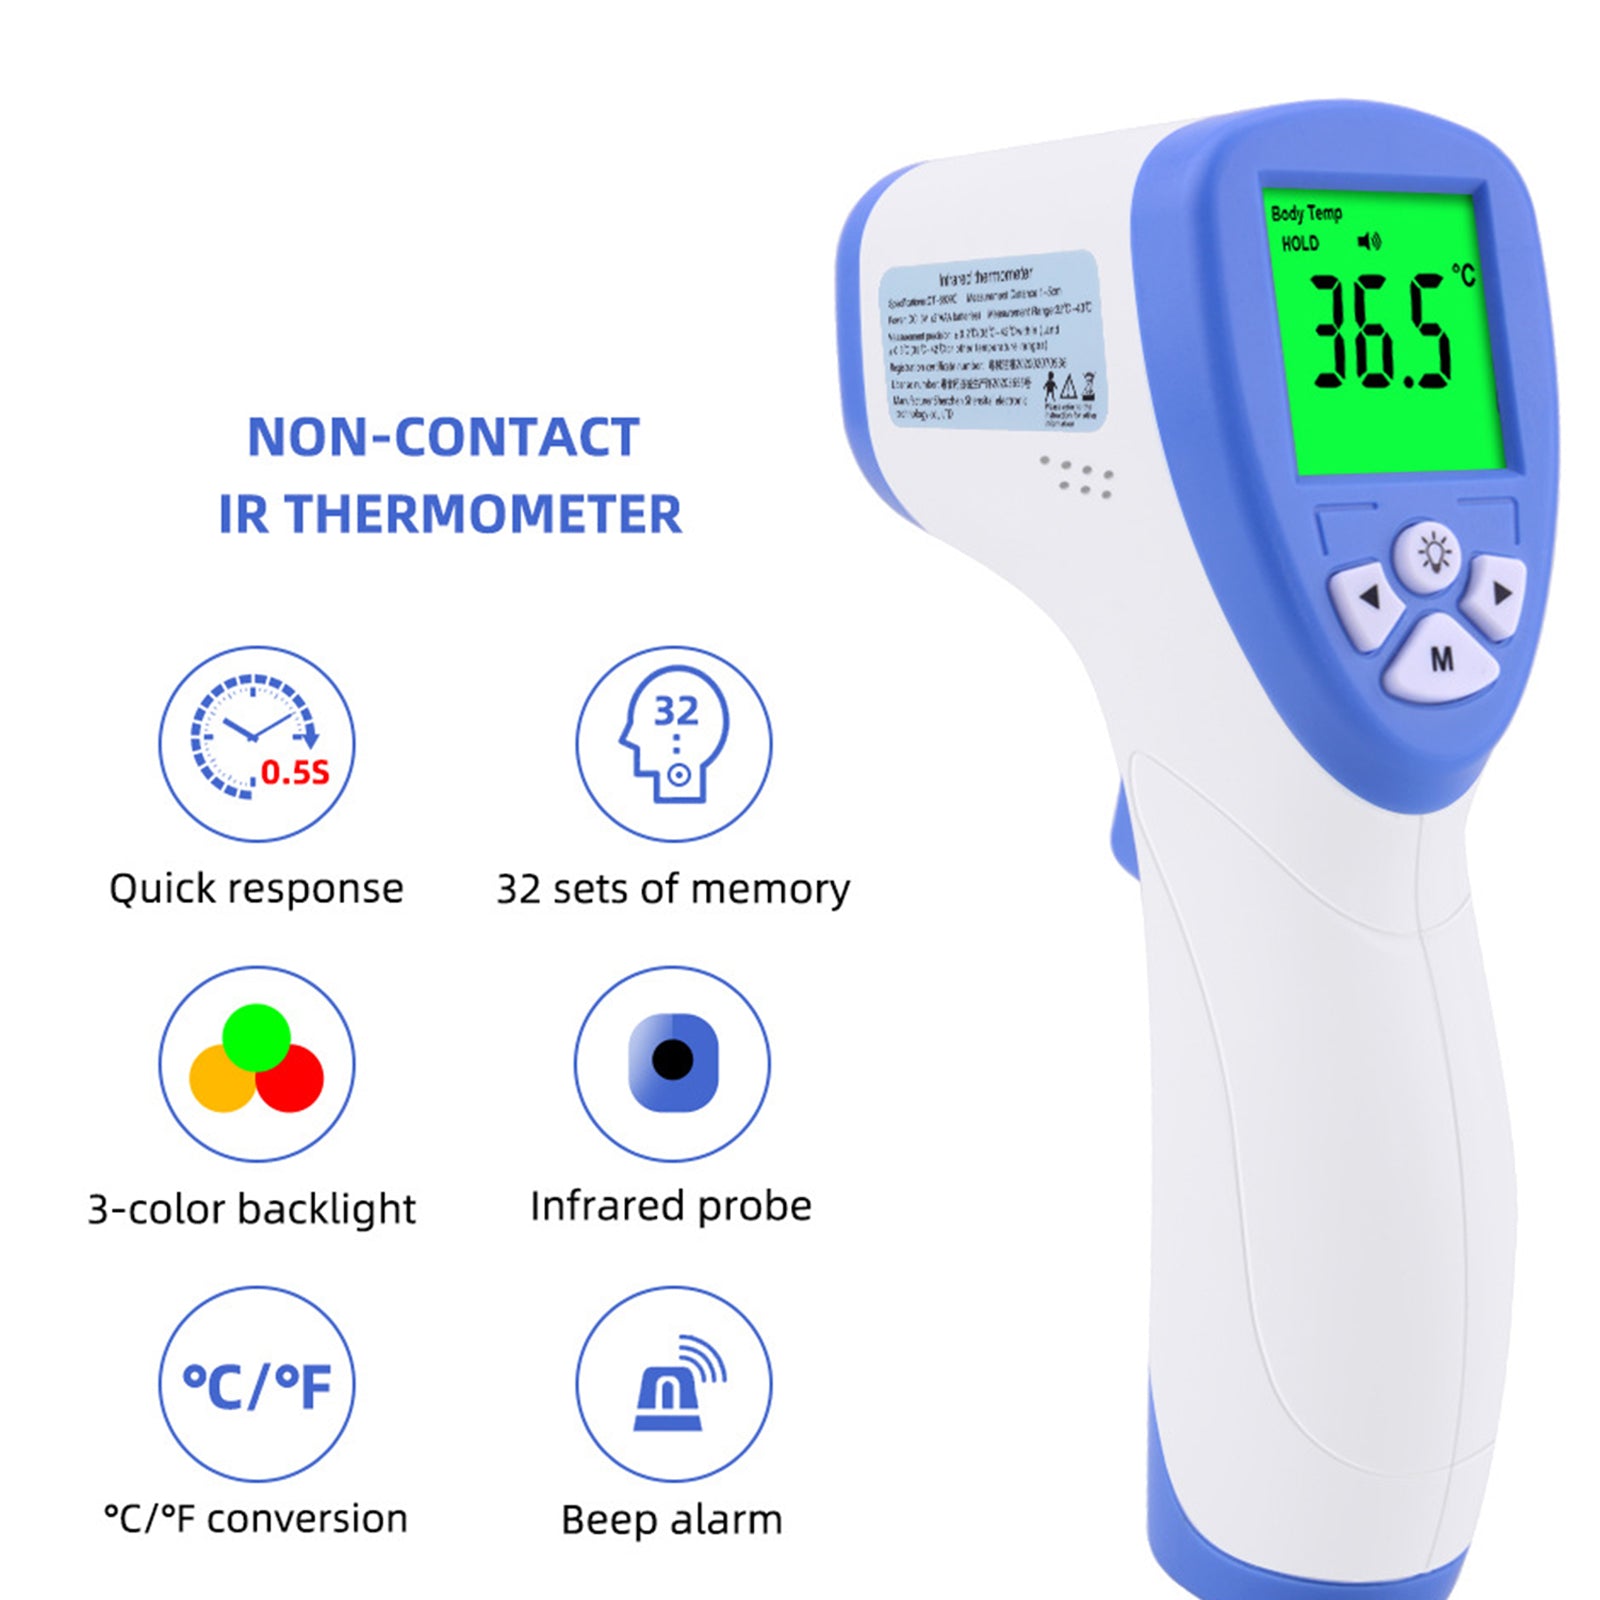 INN® Thermometre Frontal Bébé Thermomètre Infrarouge pour Fièvre, 3-en-1 Thermomètre électronique sans contact de qualité